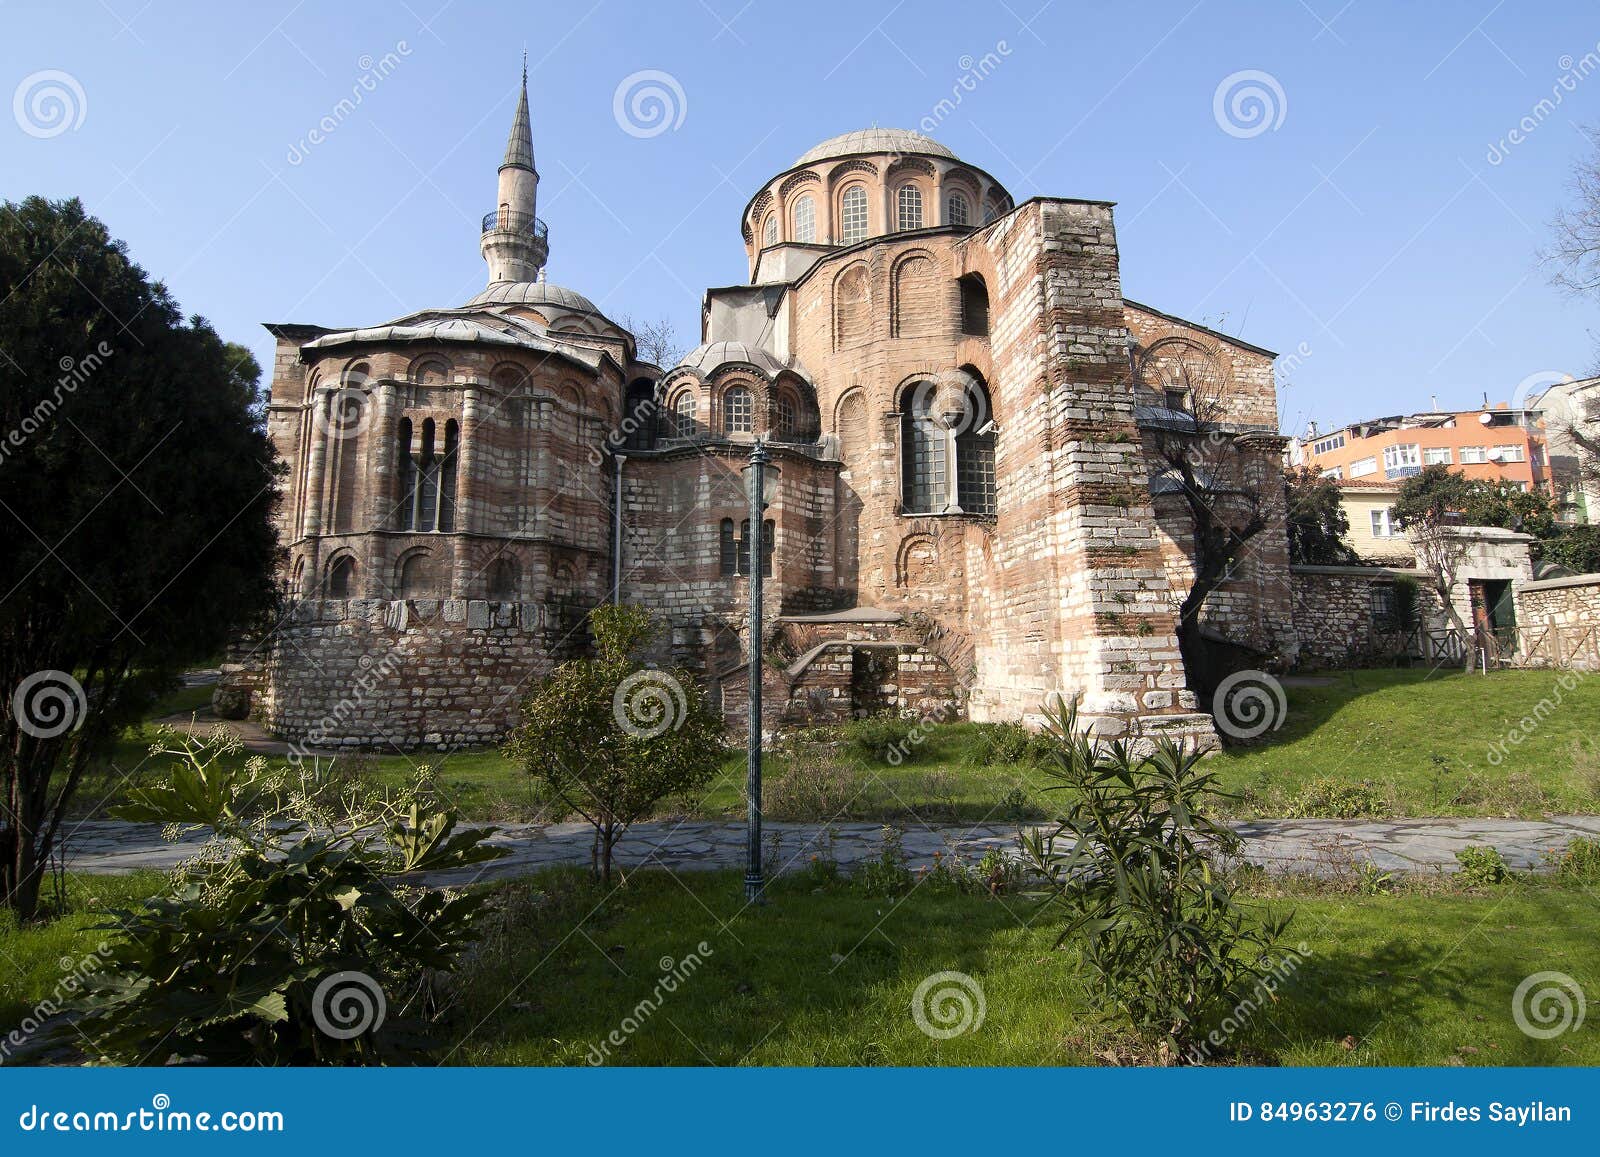 chora church, istanbul, turkey.